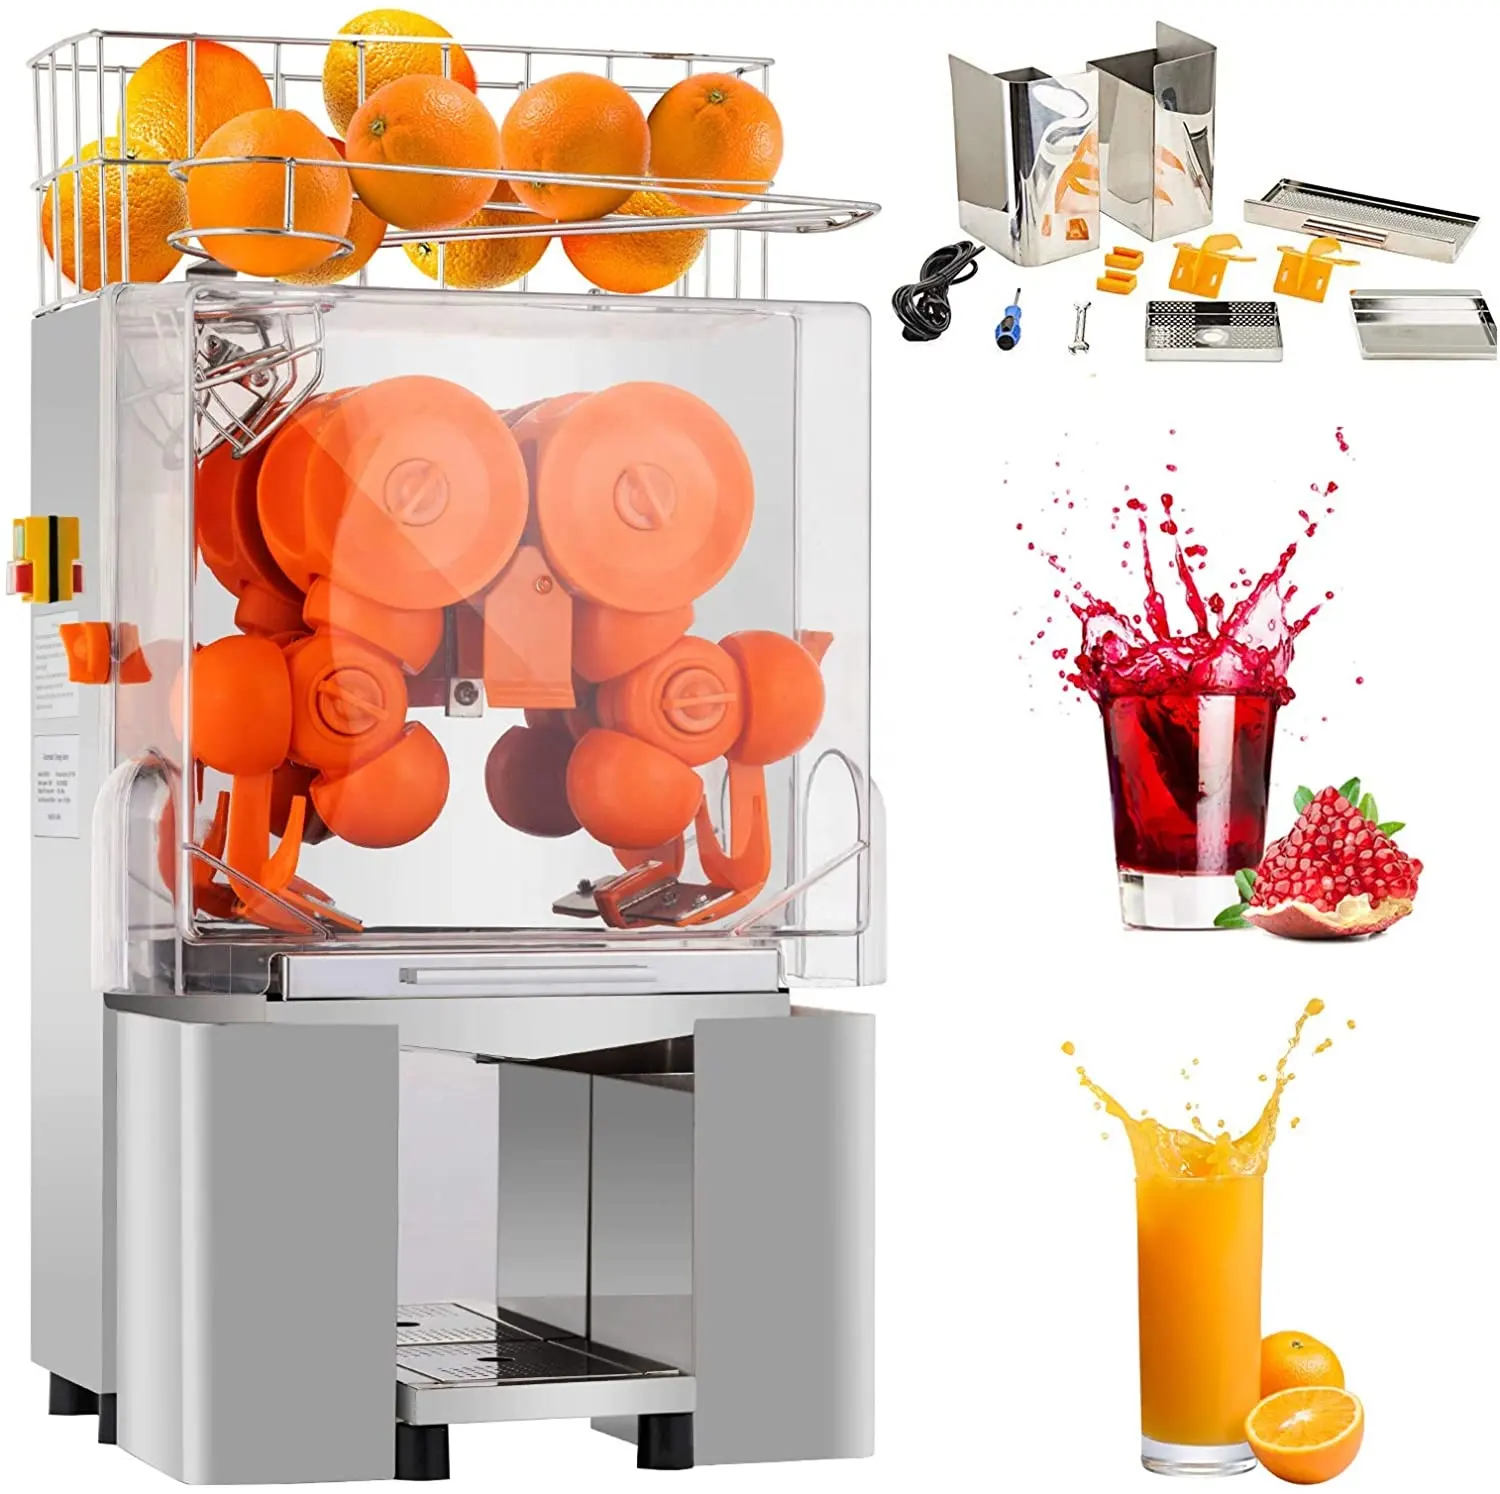 Ticari portakal sıkacağı paslanmaz çelik otomatik meyve sıkacağı makinesi endüstriyel meyve suyu üreticisi elektrikli portakal sıkacağı